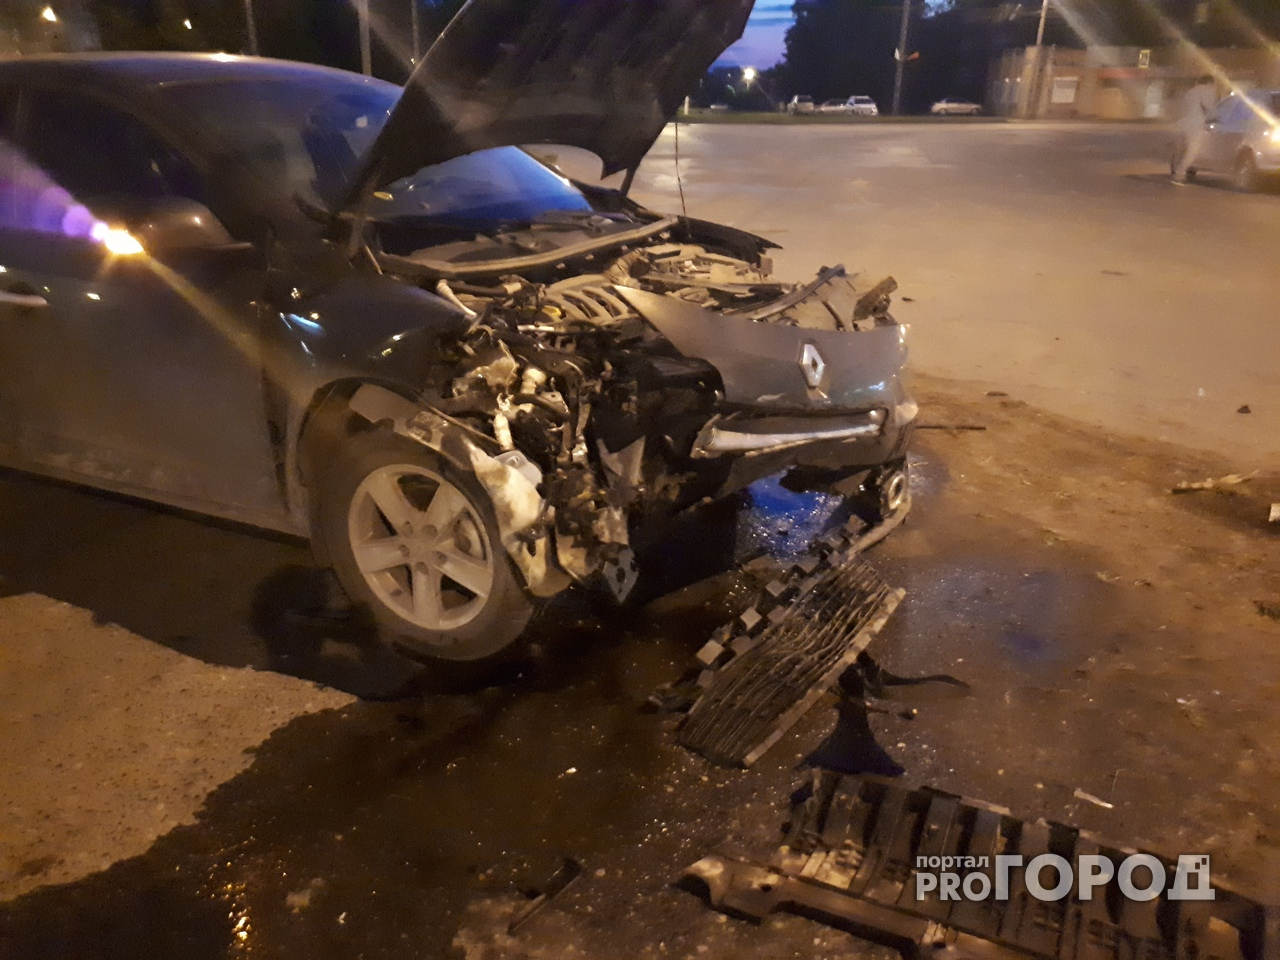 Серьезная авария в Йошкар-Оле: за рулем иномарки сидел 15-летний подросток?